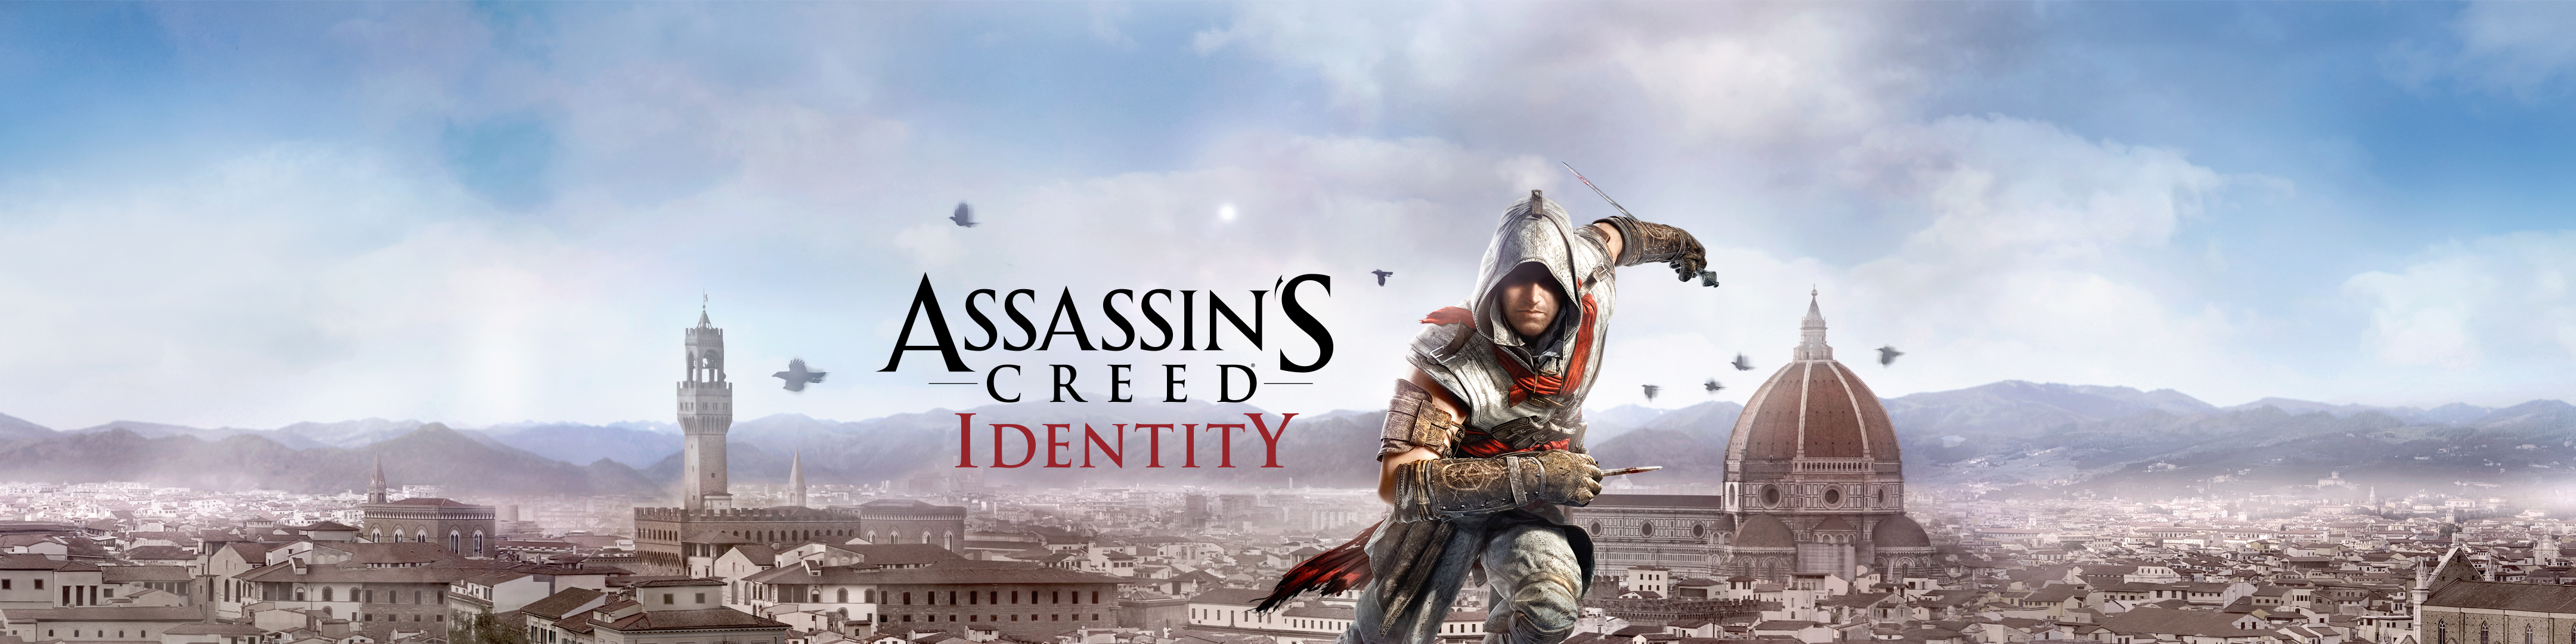 Скачать обои Личность Assassin's Creed на телефон бесплатно